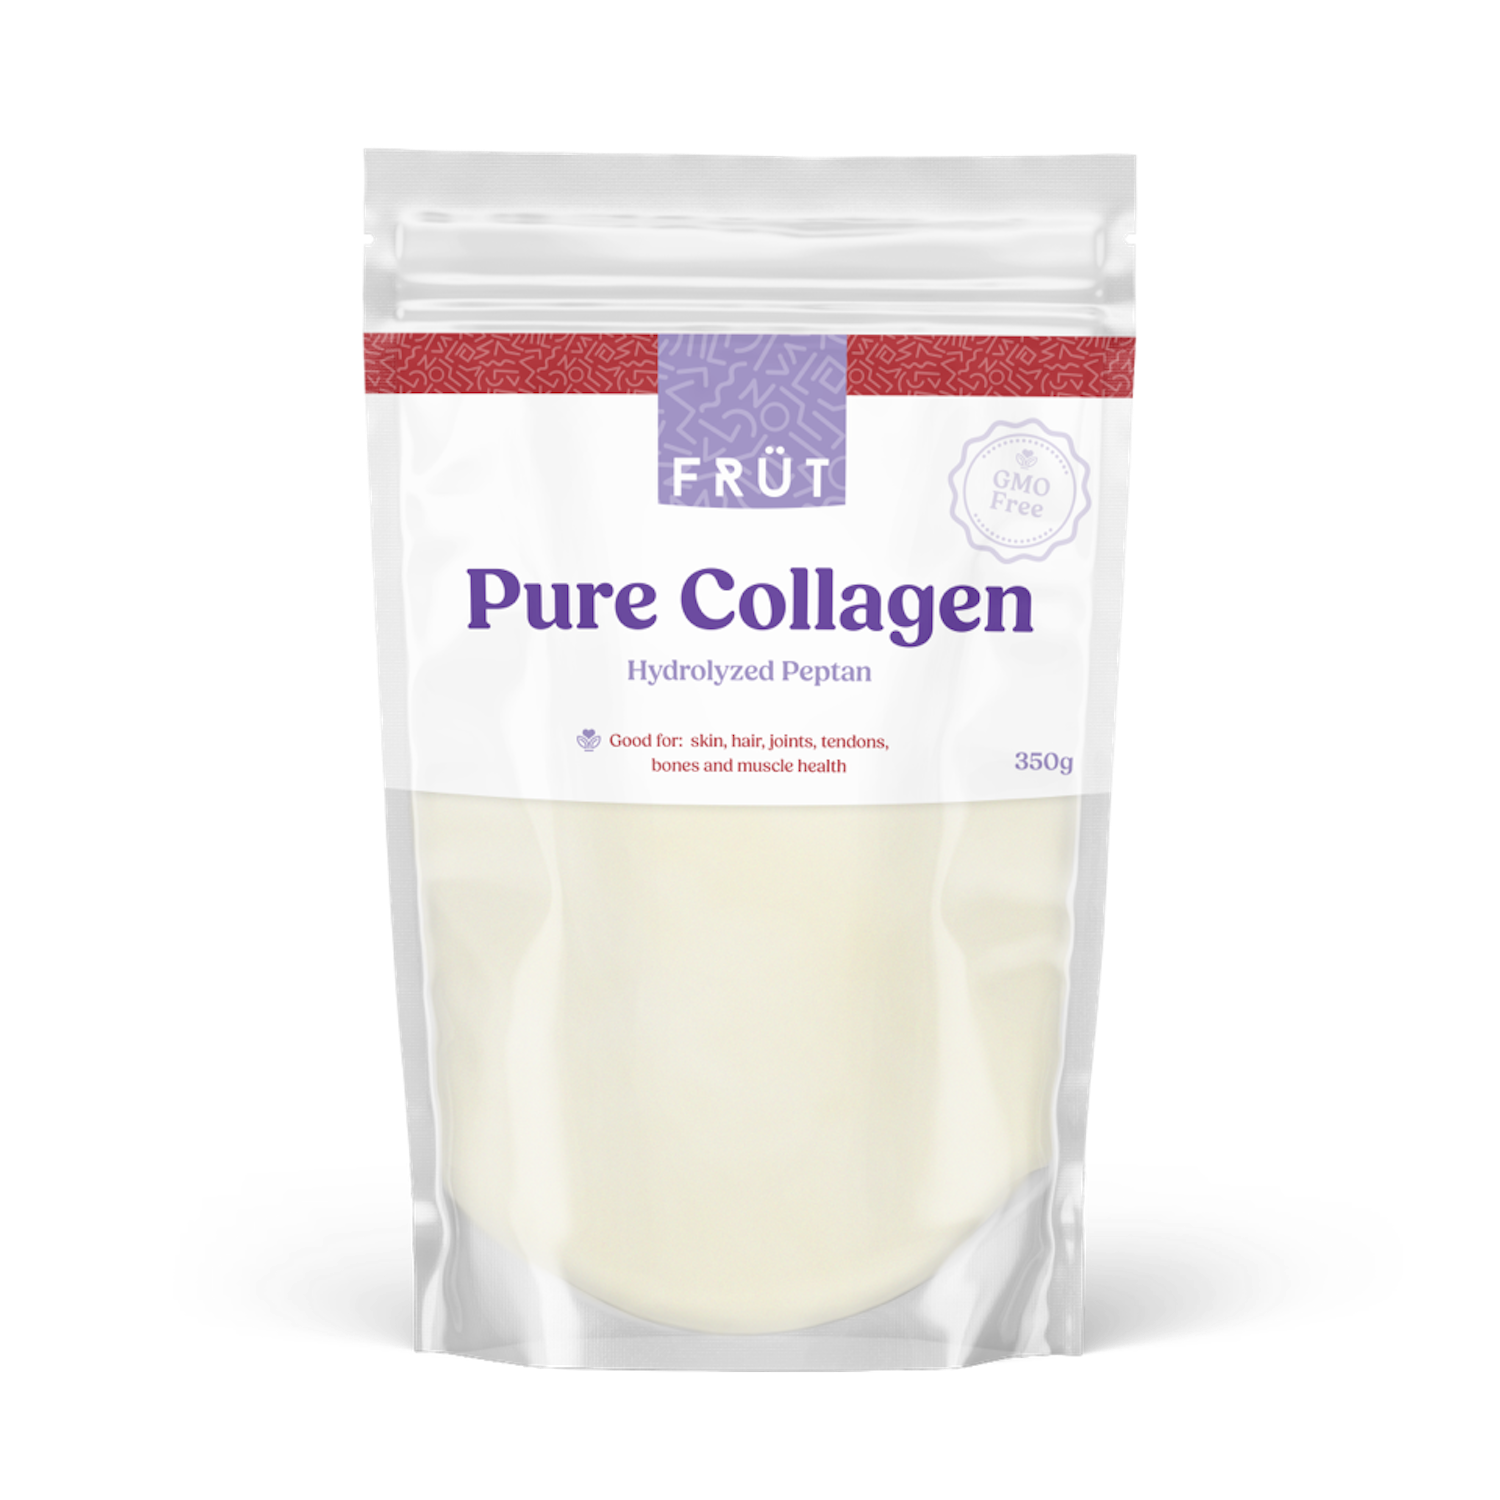 Pure Collagen